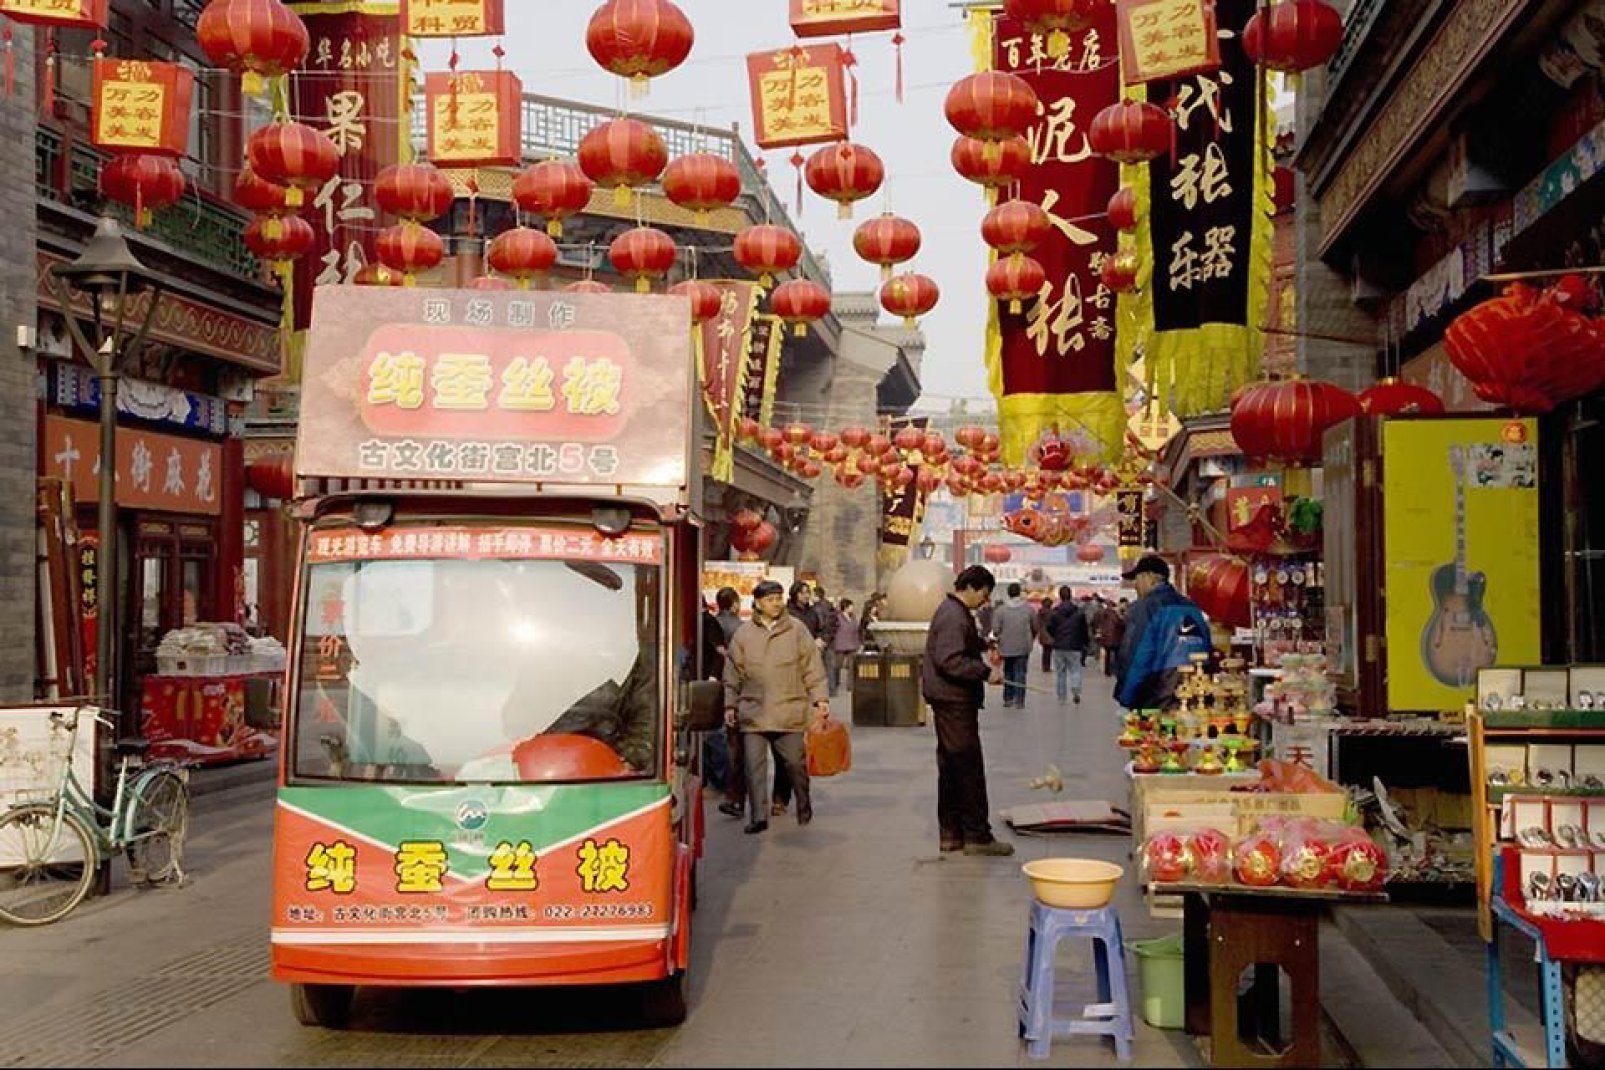 Typisch chinesische Dekorationen eines Marktes während des 'Chinese Lunar New Year'- Festes, das immer am ersten Tag des ersten Monats des chinesischen Kalenders gefeiert wird.